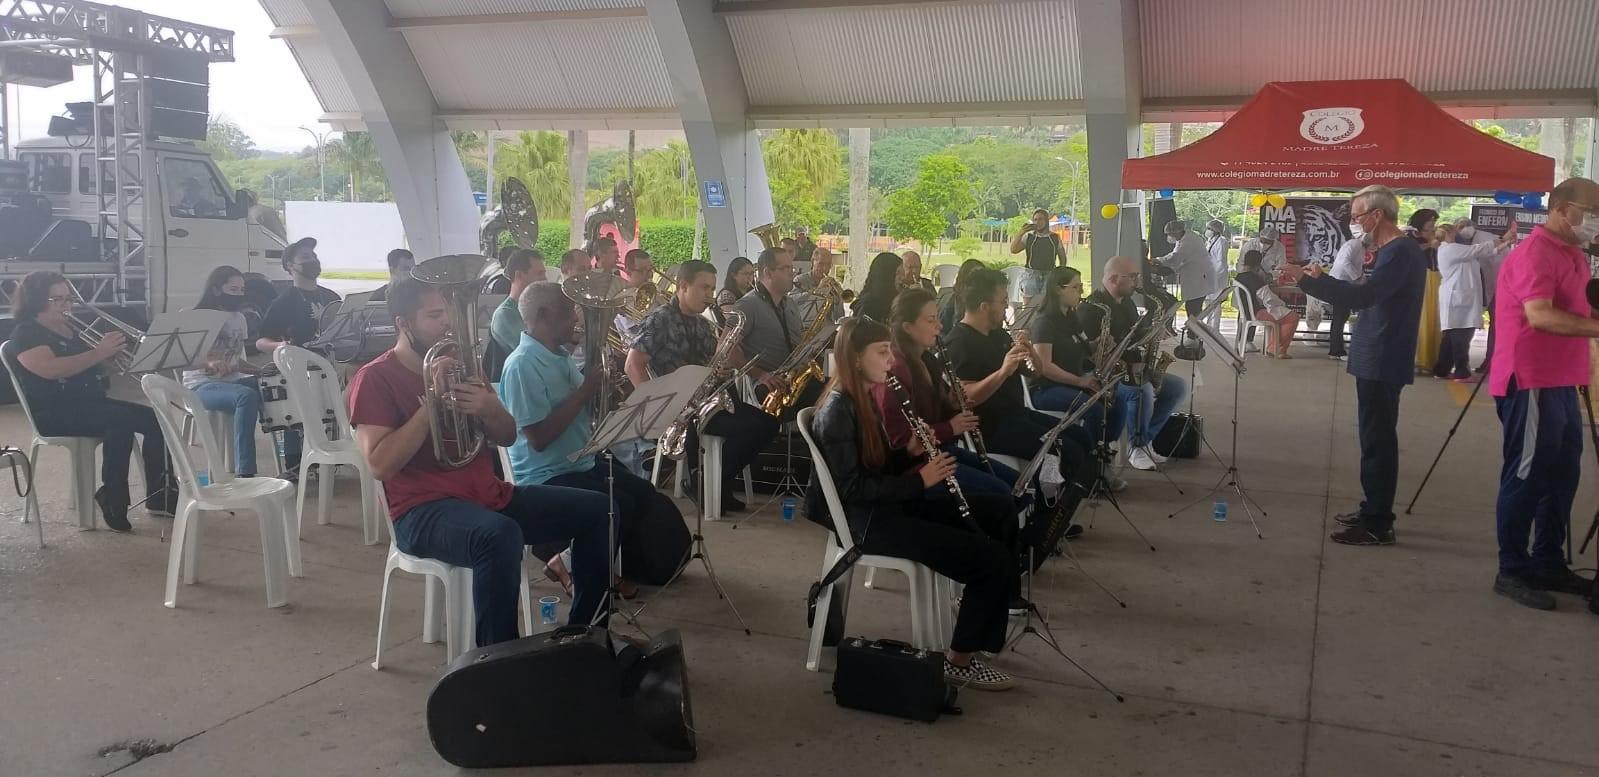 Apresentações musicais marcam os 164 anos de Itatiba no Parque Luis Latorre